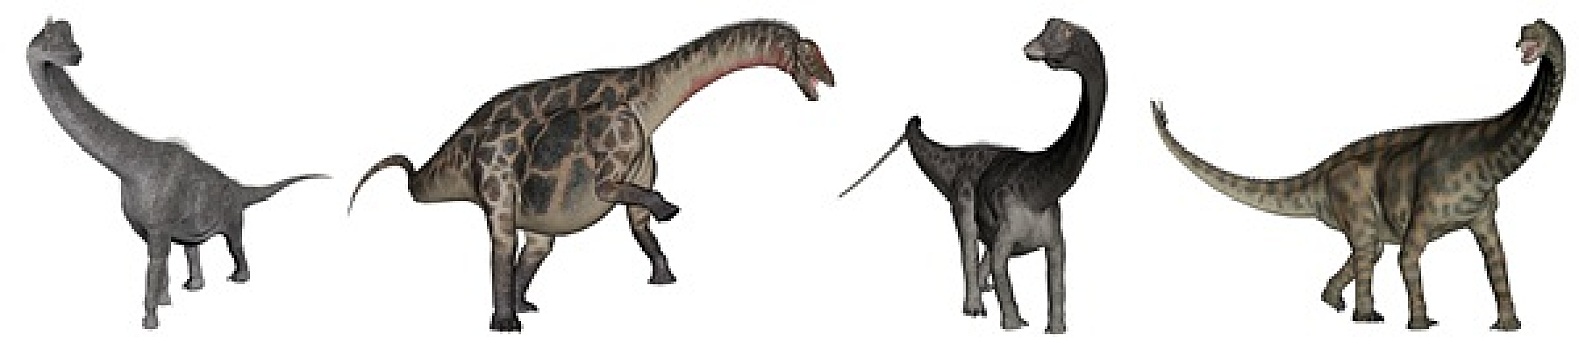 侏罗纪,恐龙